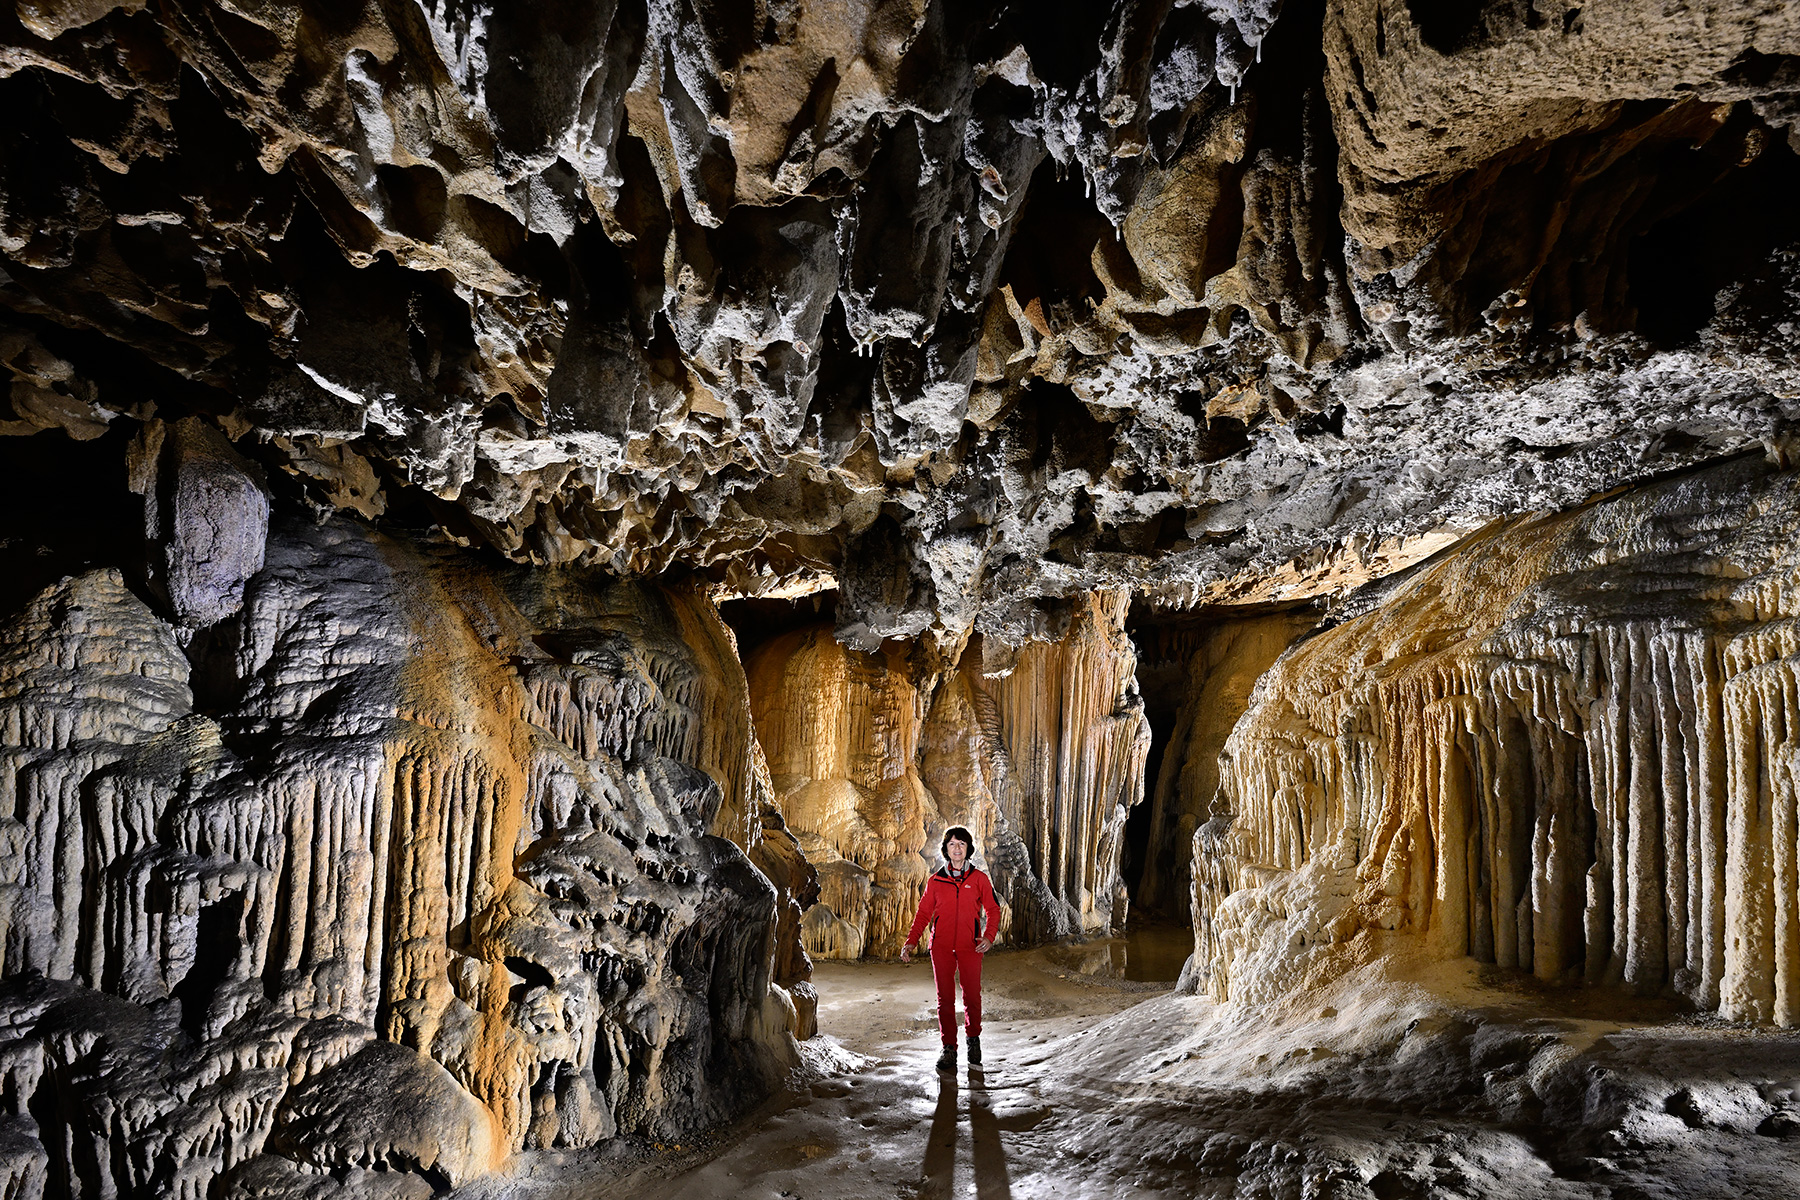 Grotte préhistorique de Bédeilhac (Ariège) - Passage concrétionné du labyrinthe